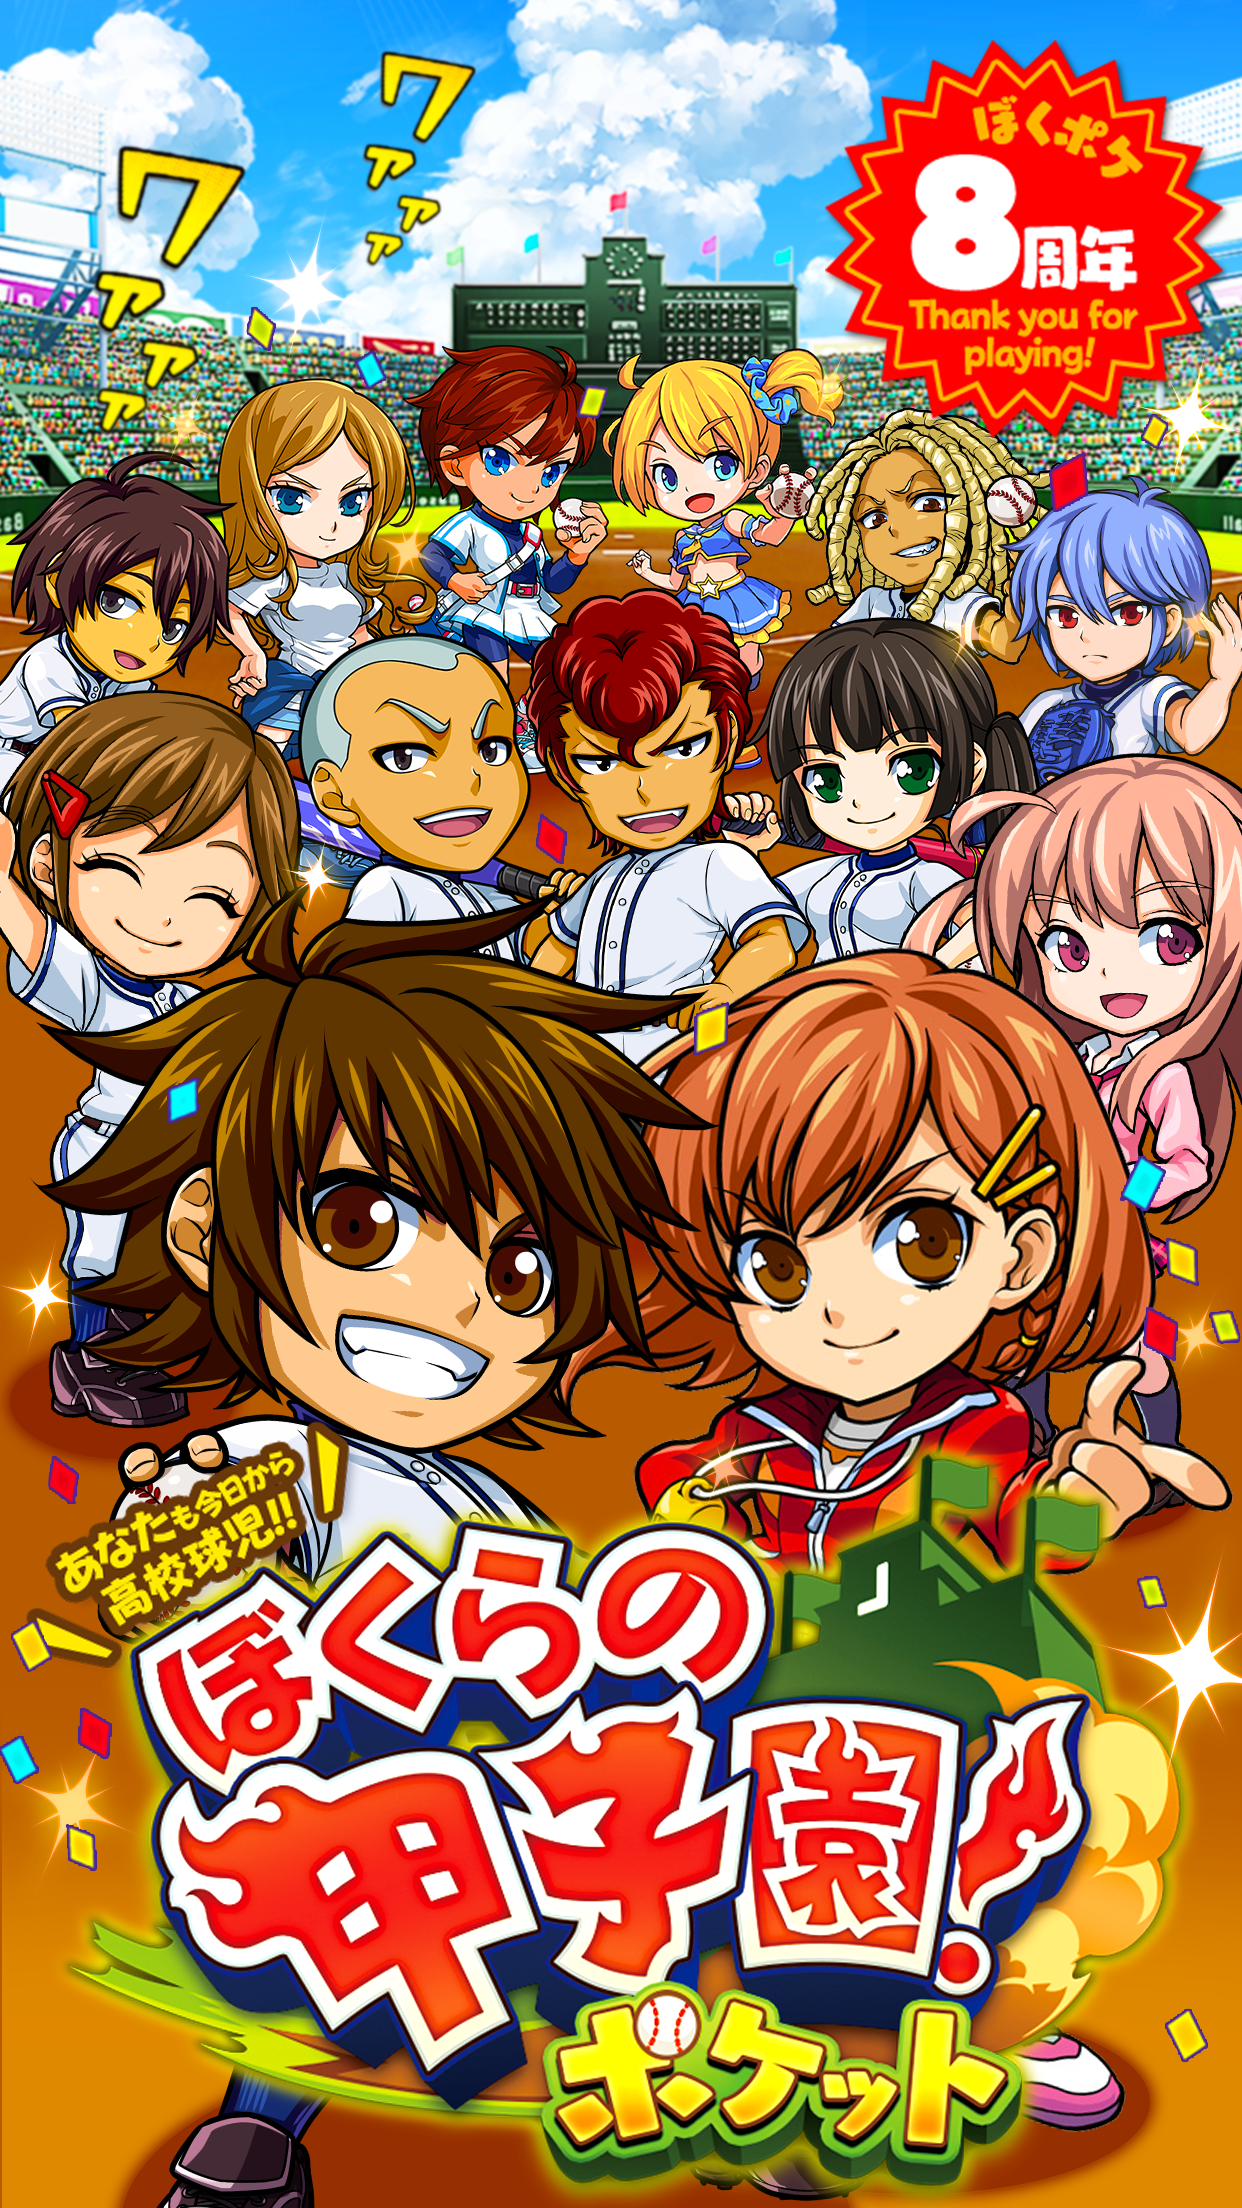 Screenshot 1 of Koshien kami! Permainan bisbol sekolah menengah saku 8.14.0